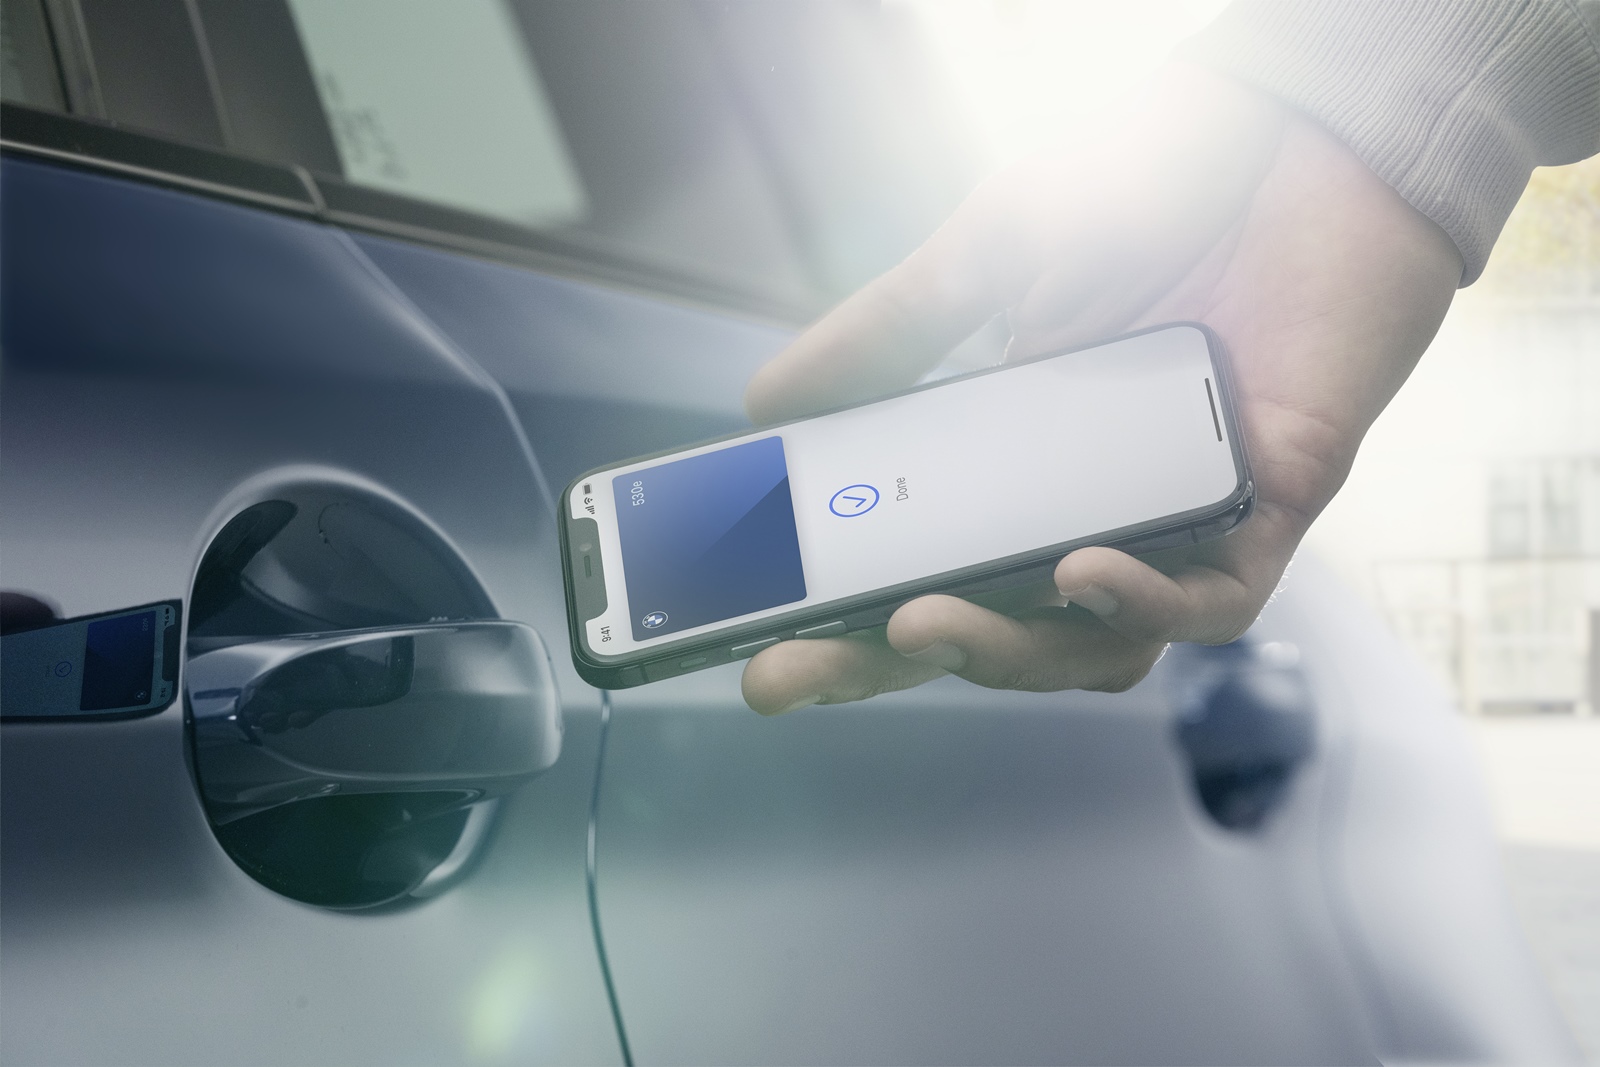 2021 年式新世代車款導入 iPhone 手機數位鑰匙、全新升級加入 NLU 自然語言辨識功能的BMW智慧語音助理2.0。